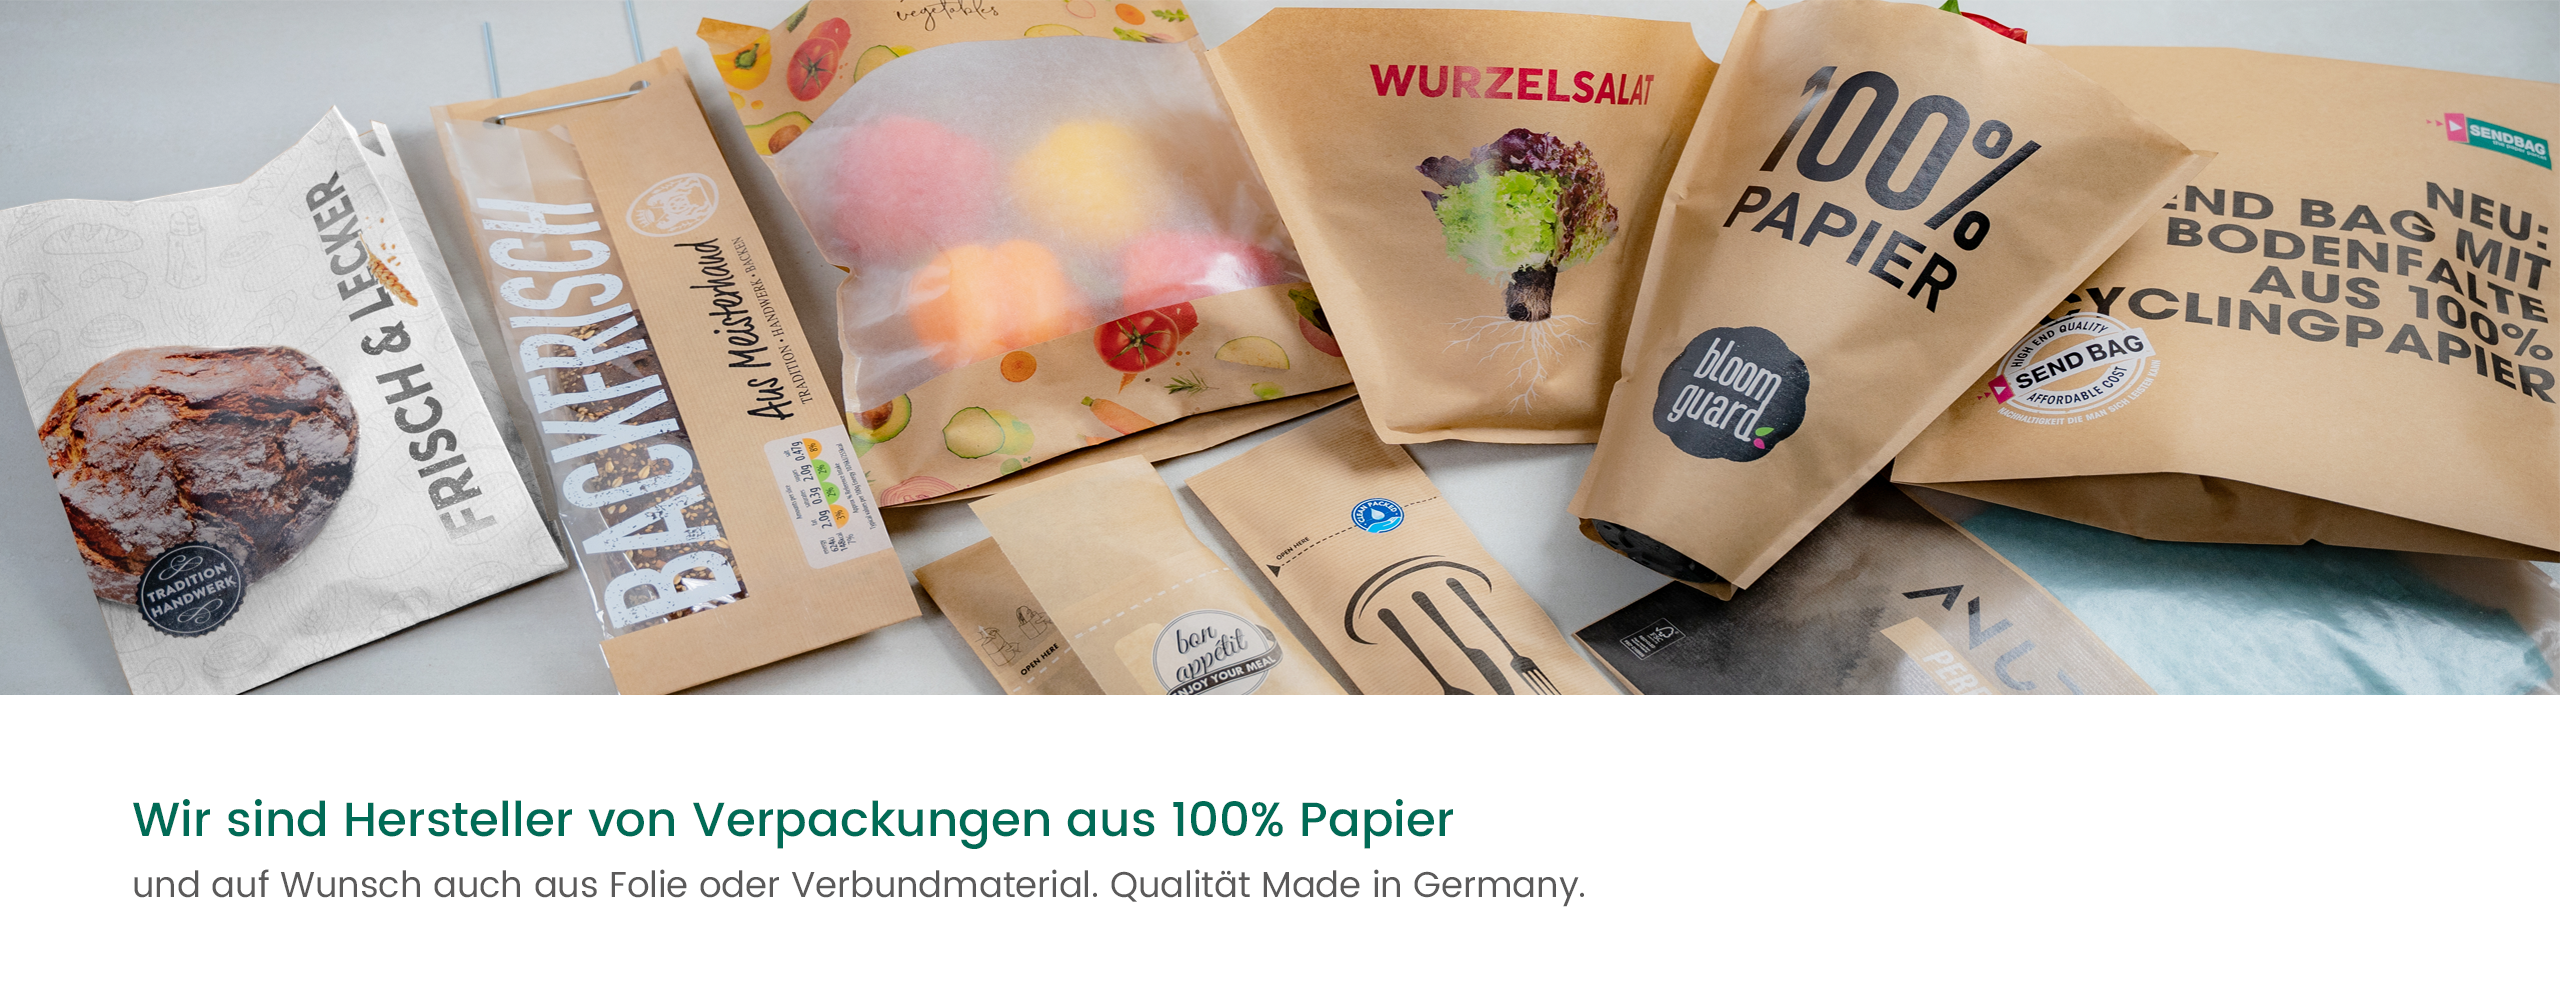 Verpackungen aus 100% Papier - nachhaltige und innovative Verpackungslösungen von WEBER Verpackungen